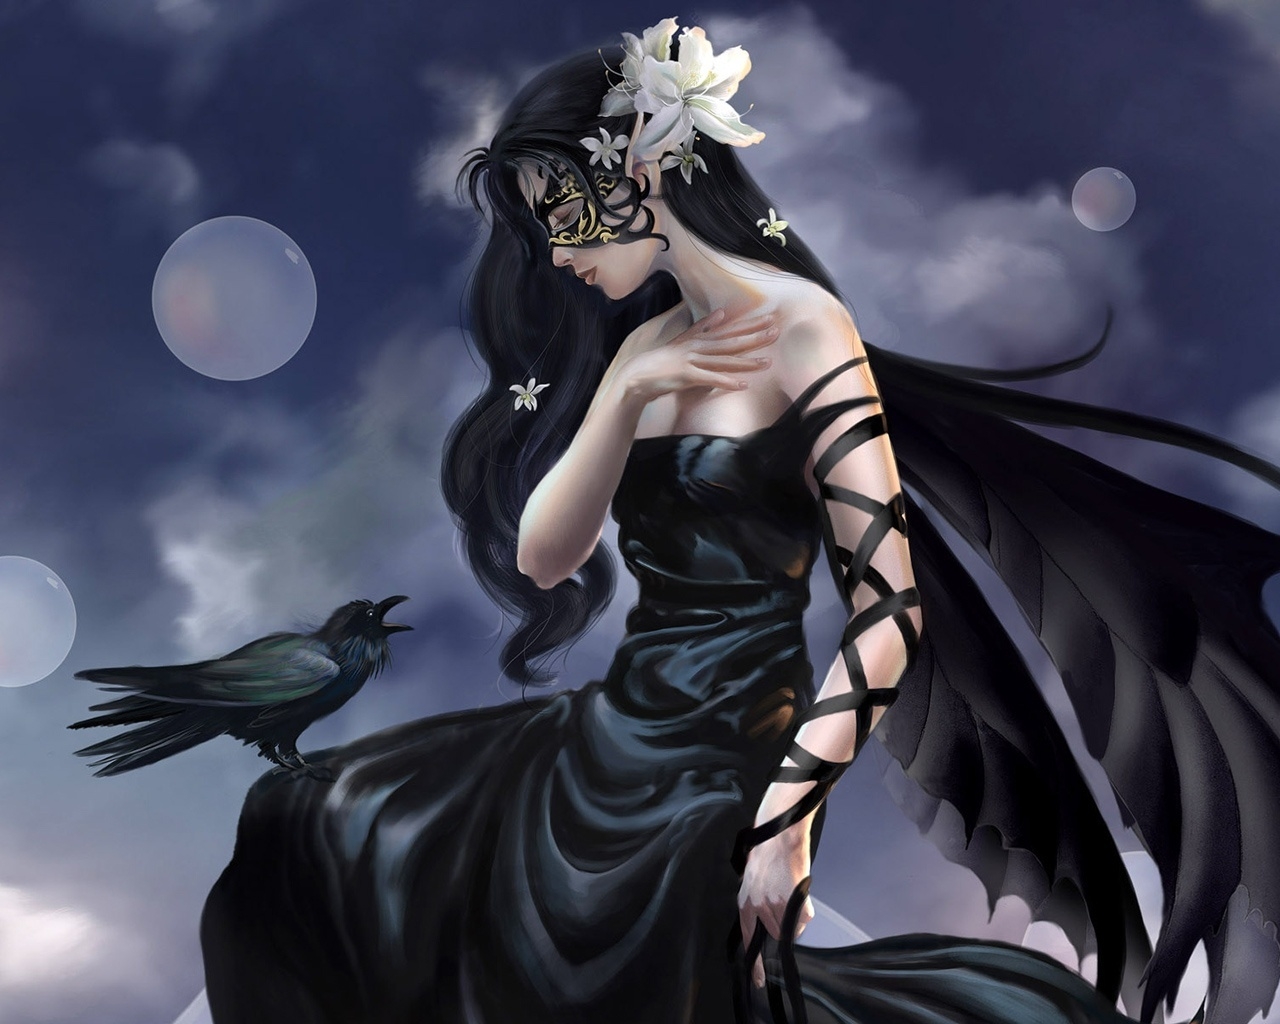 Fantasy Girl Raven for 1280 x 1024 resolution